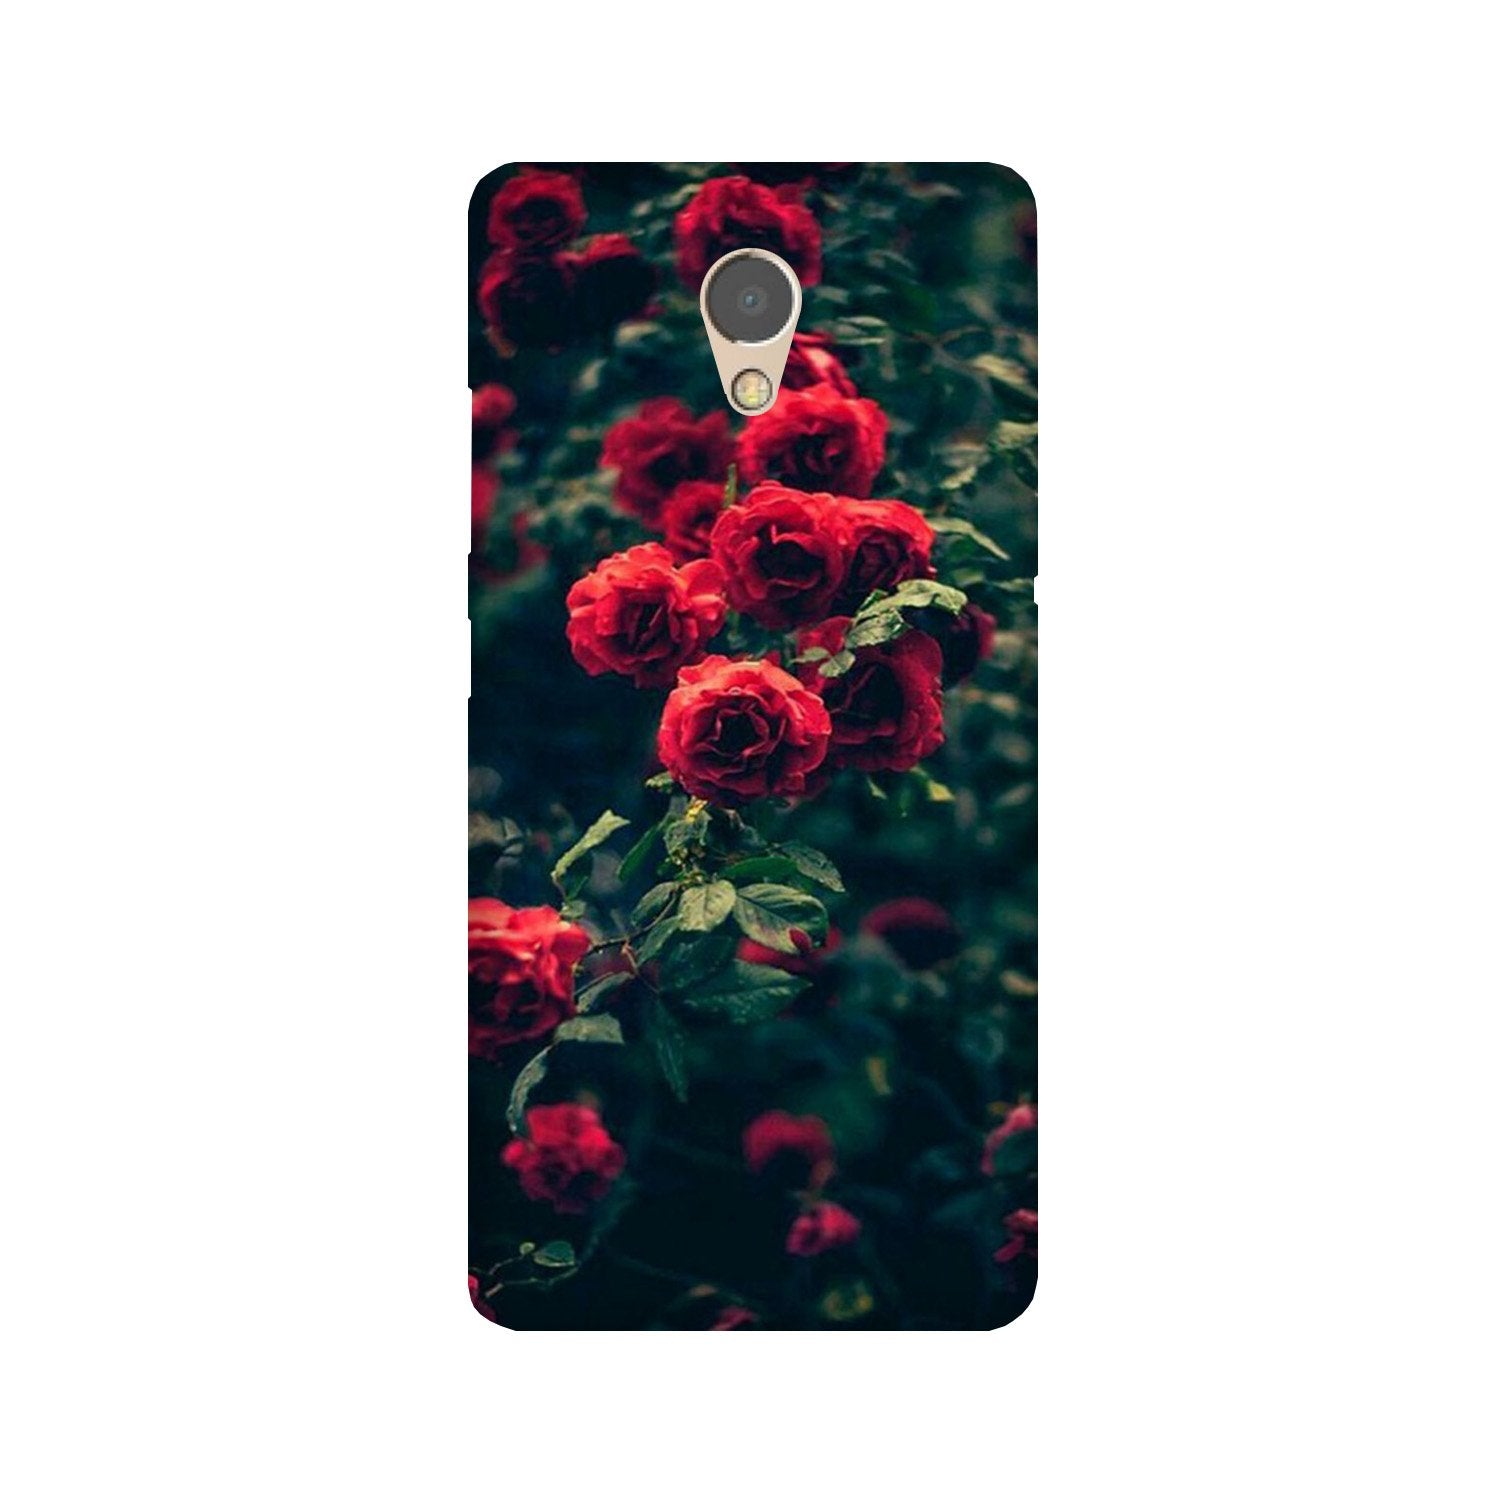 Red Rose Case for Lenovo P2